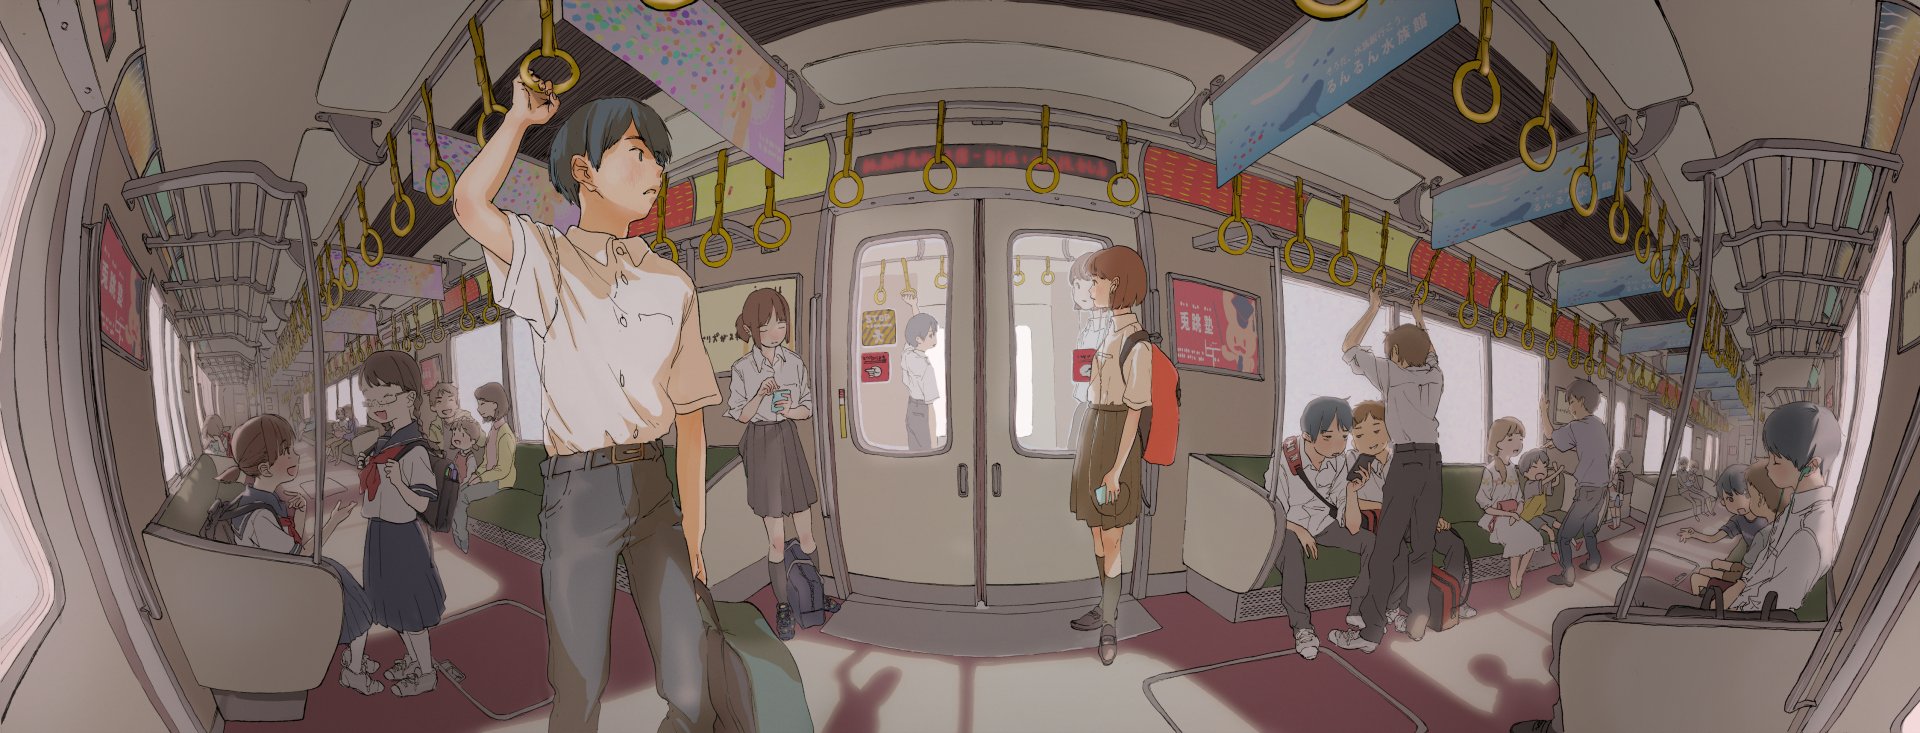 Аниме персонажи в поезде